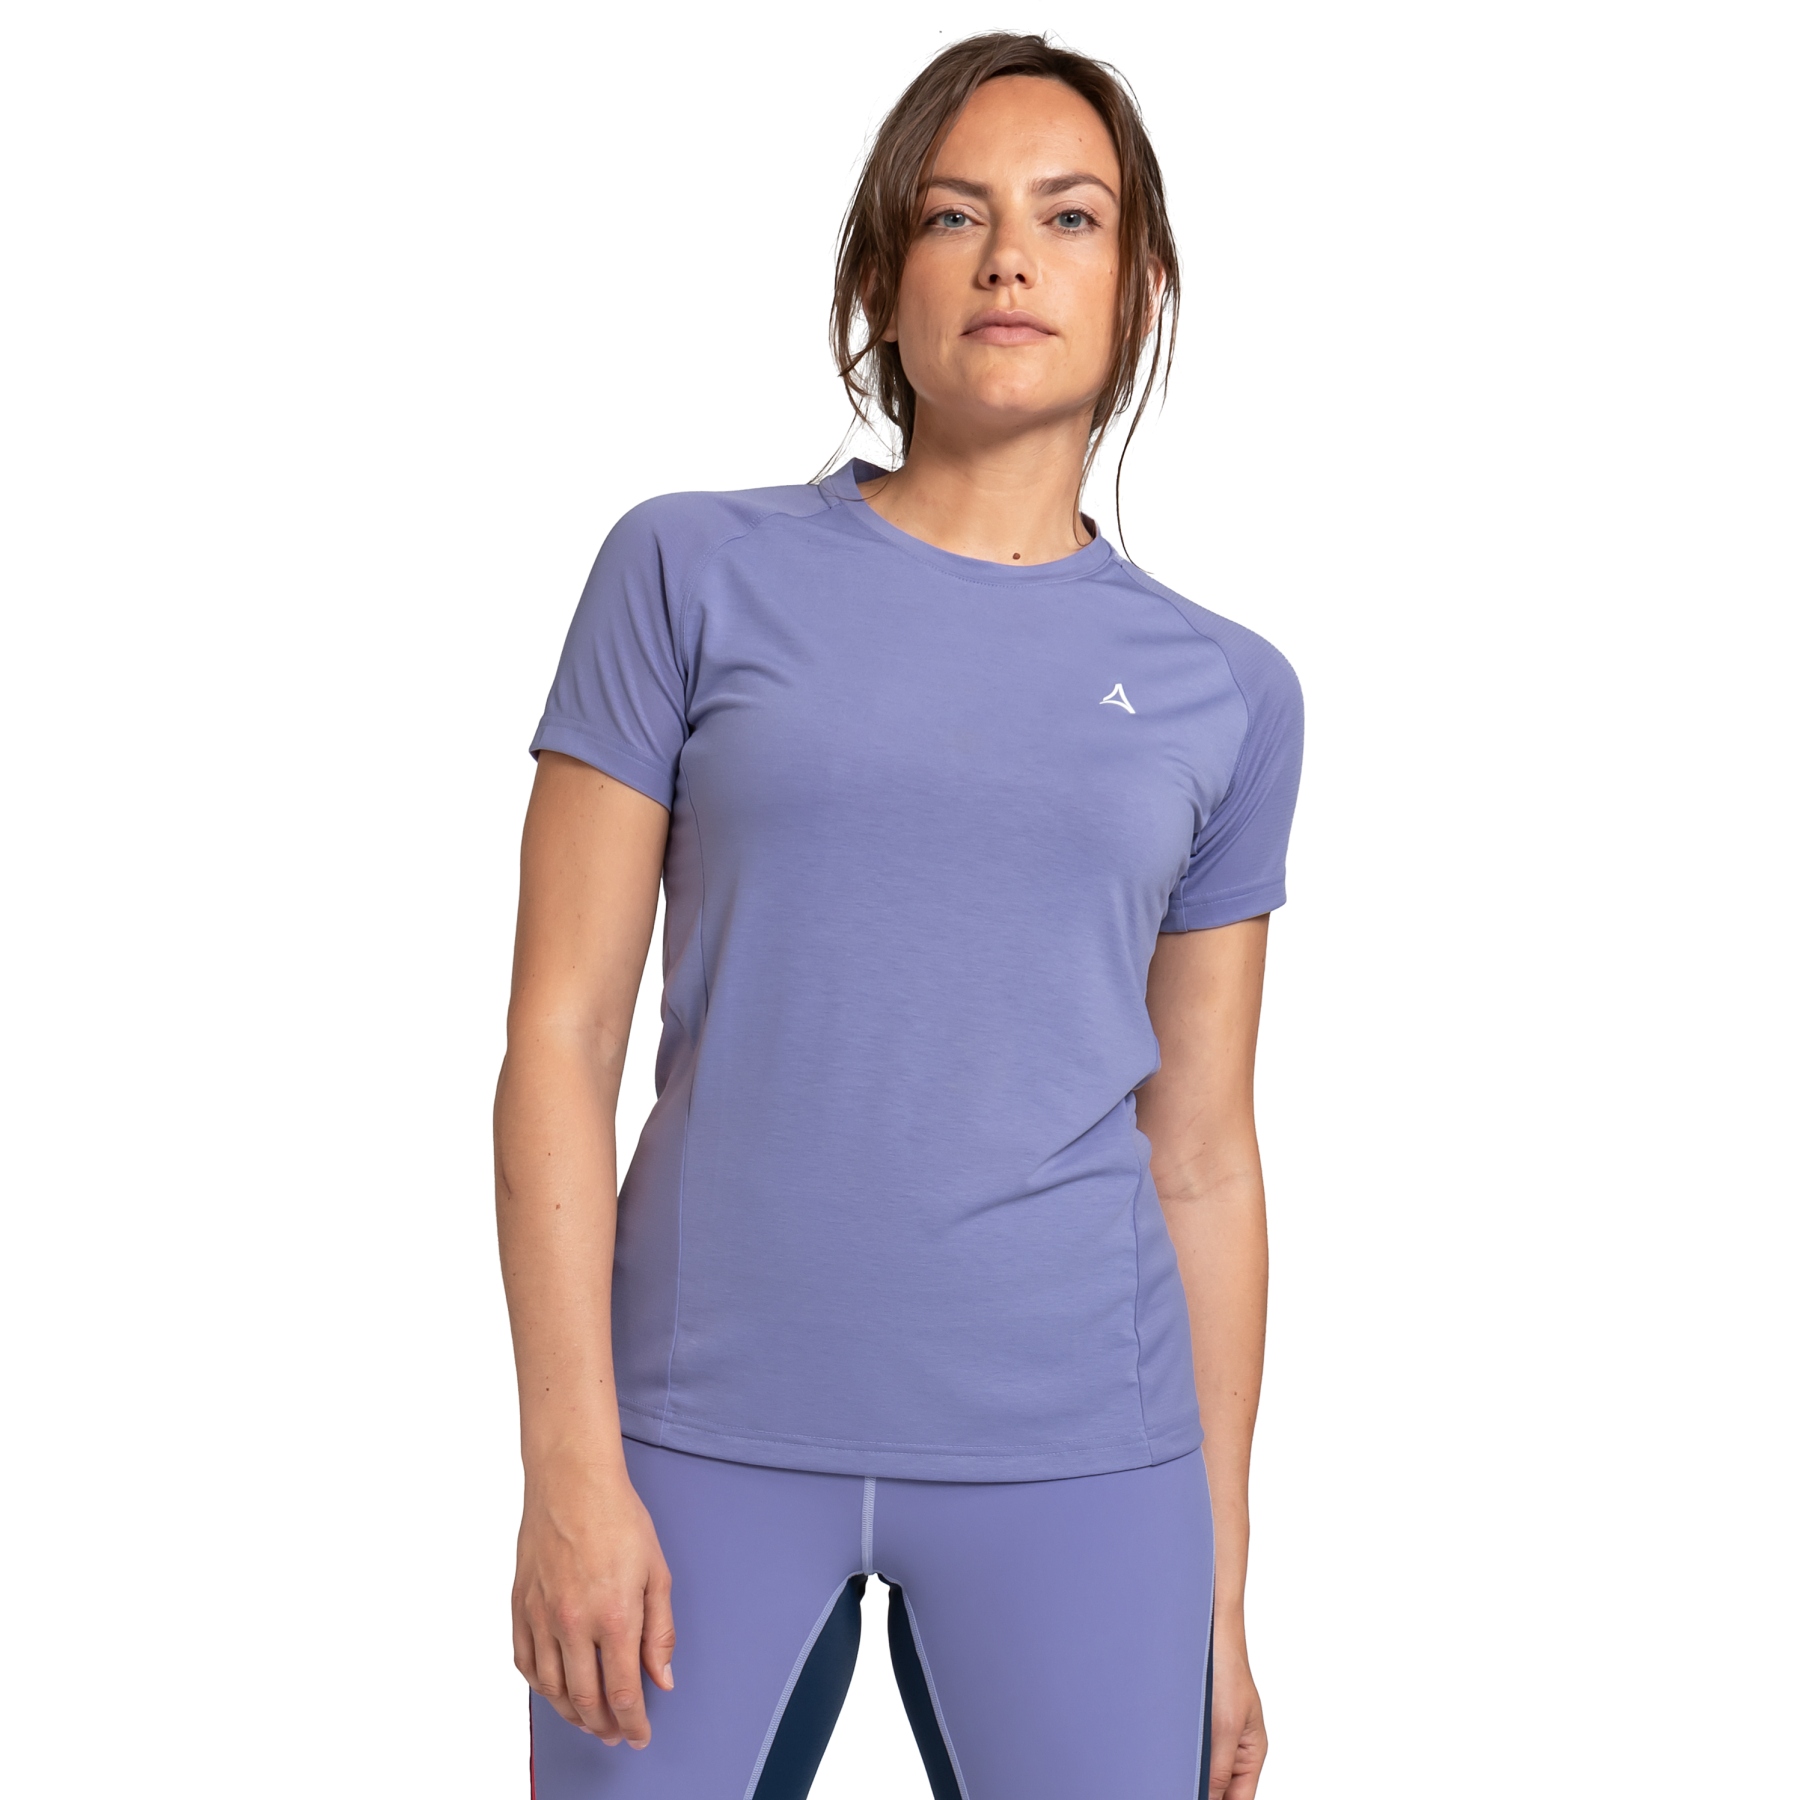 Produktbild von Schöffel Solvorn1 T-Shirt Damen - spring lavender 3085